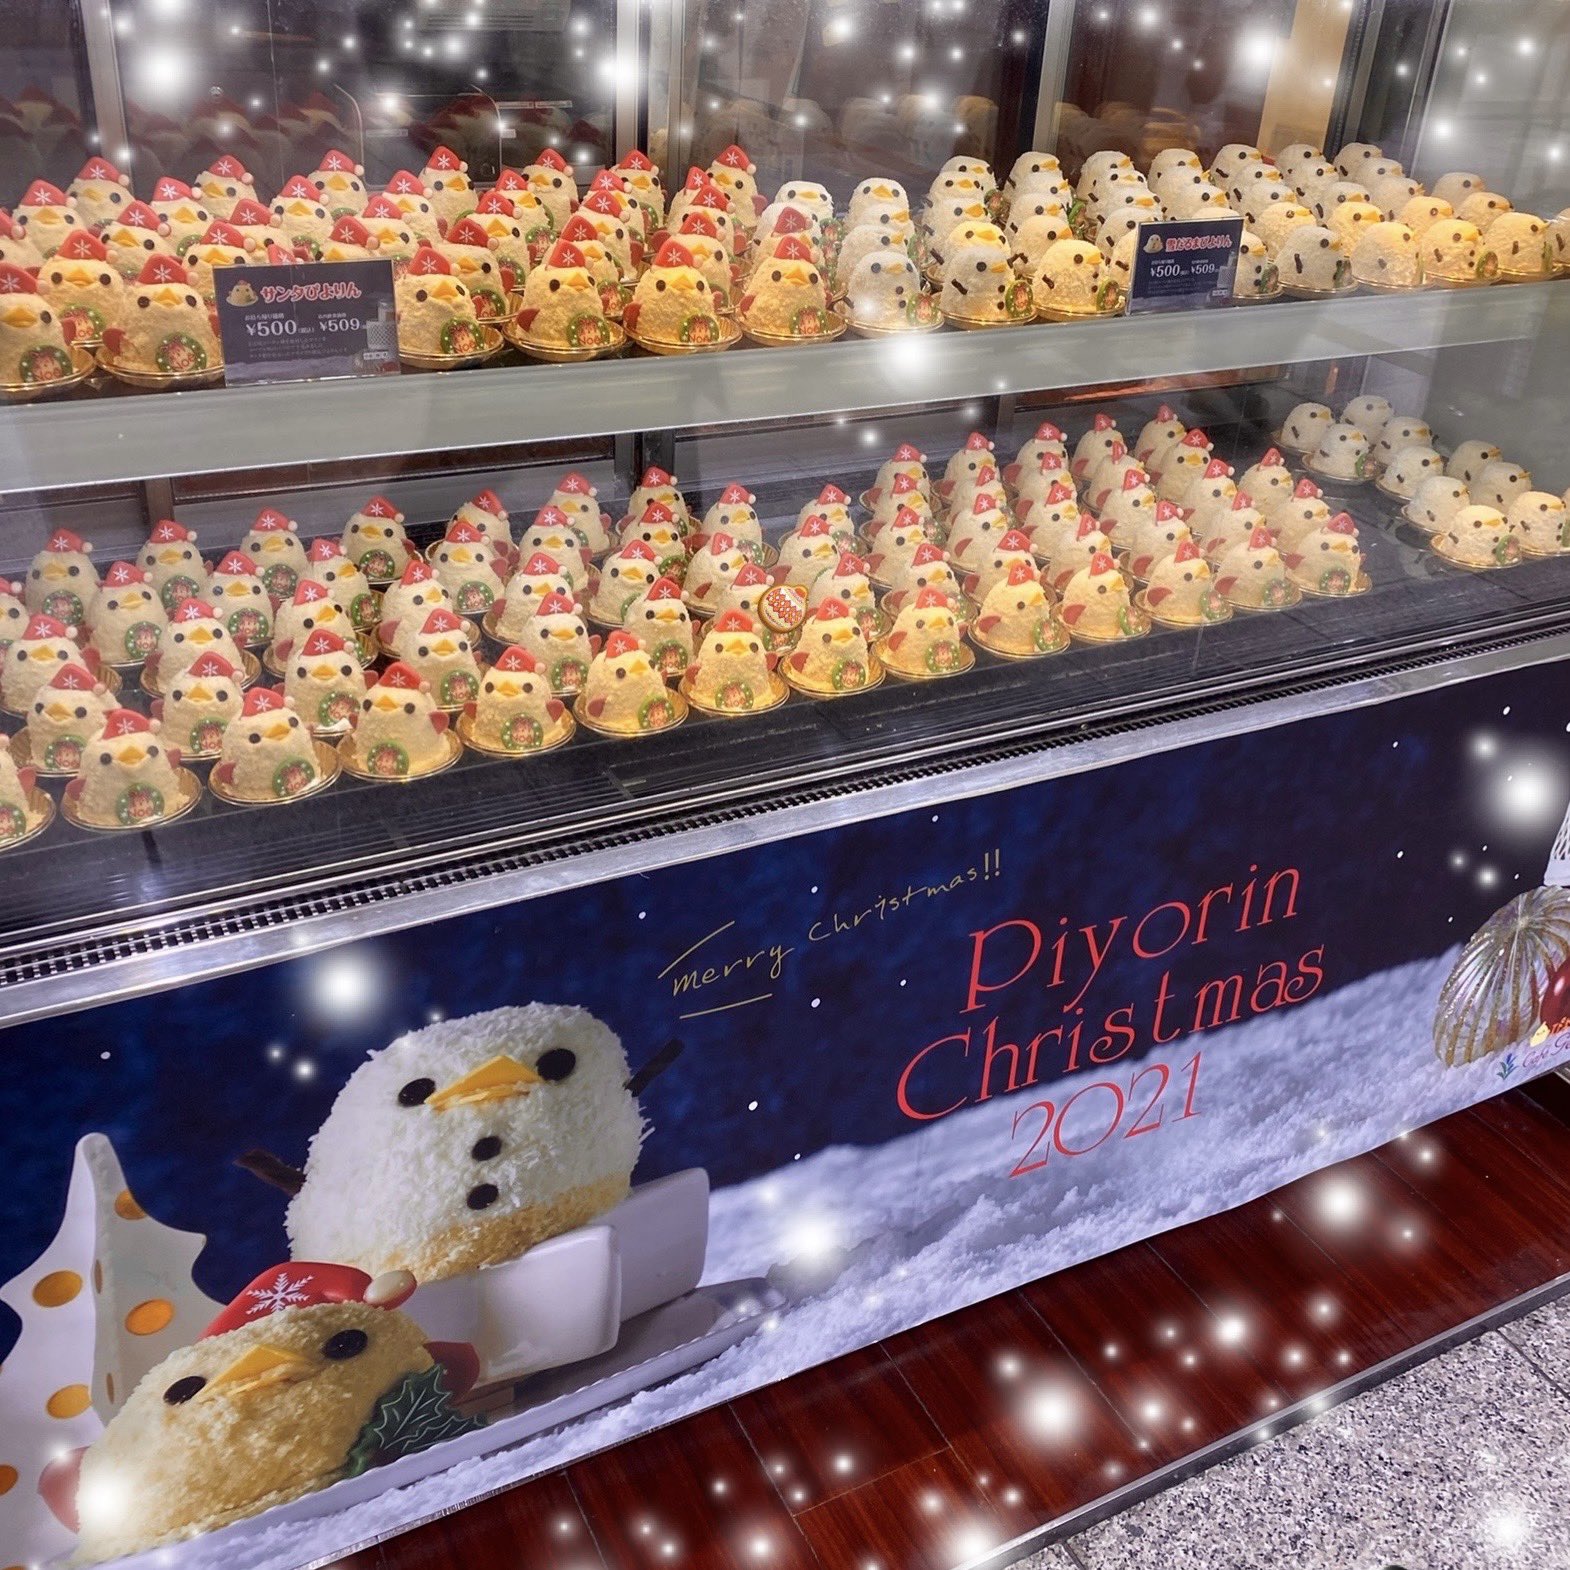 としたセレクトショップ クリスマス☆雪だるま&ひよこ おもちゃ/人形